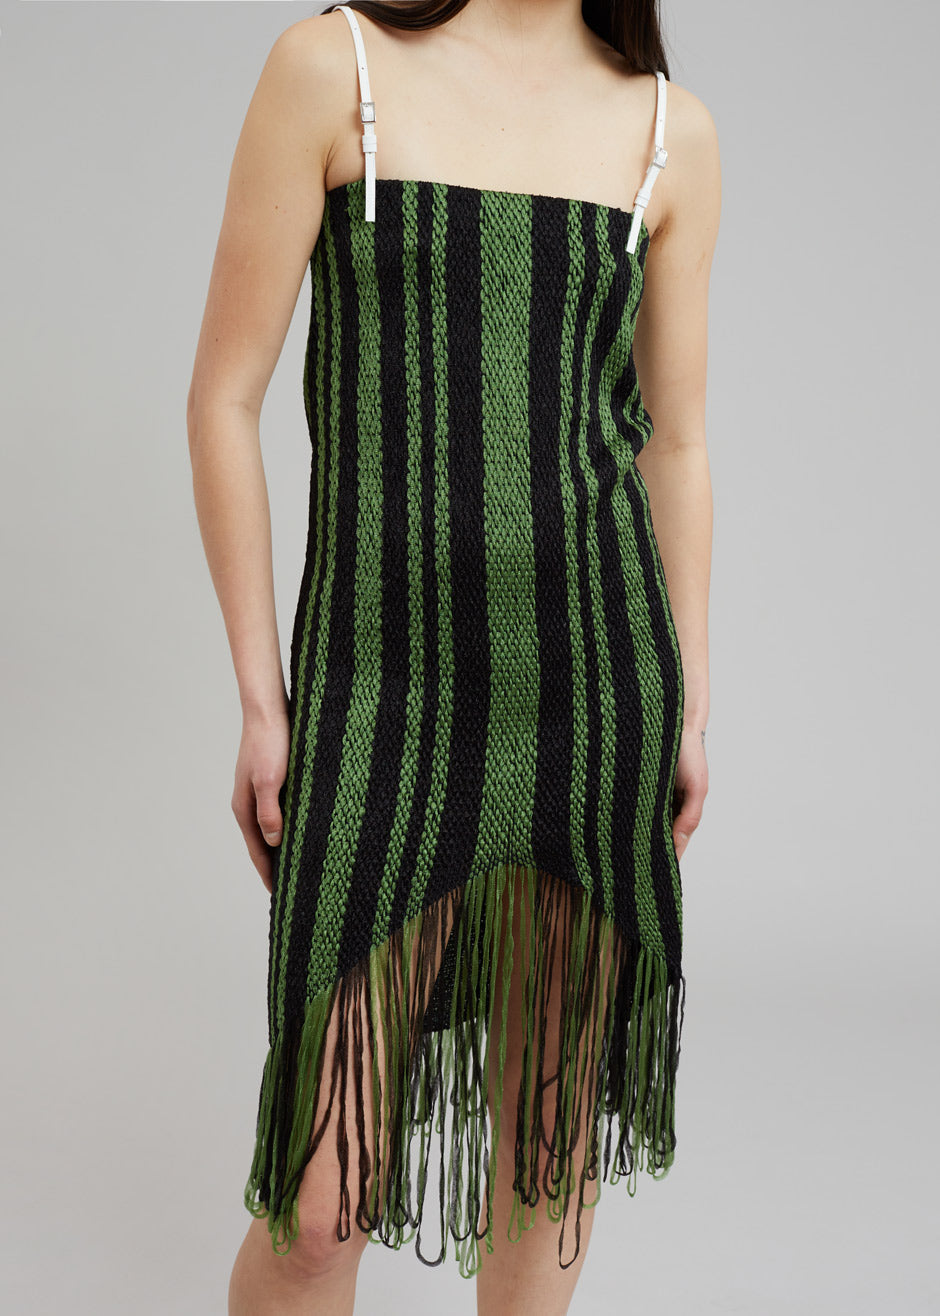 JW Anderson Fringe Detail Camisole Dress - Green/Black - 1